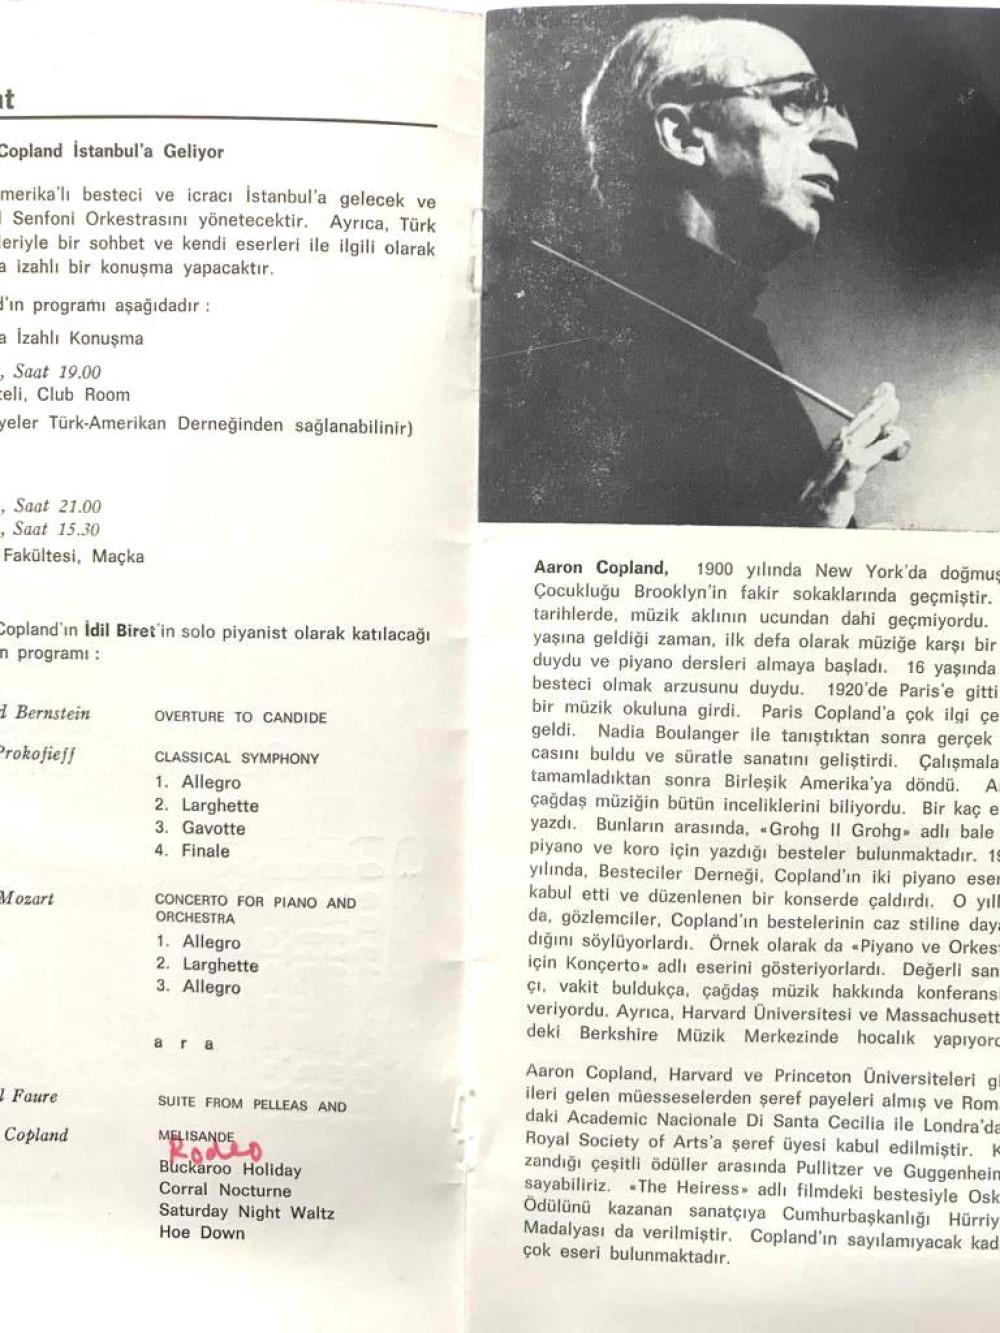 Amerikan Kültür Merkezi Türkiye Cumhuriyetinin 50. yılını kutlar - Ekim 1973 bülteni